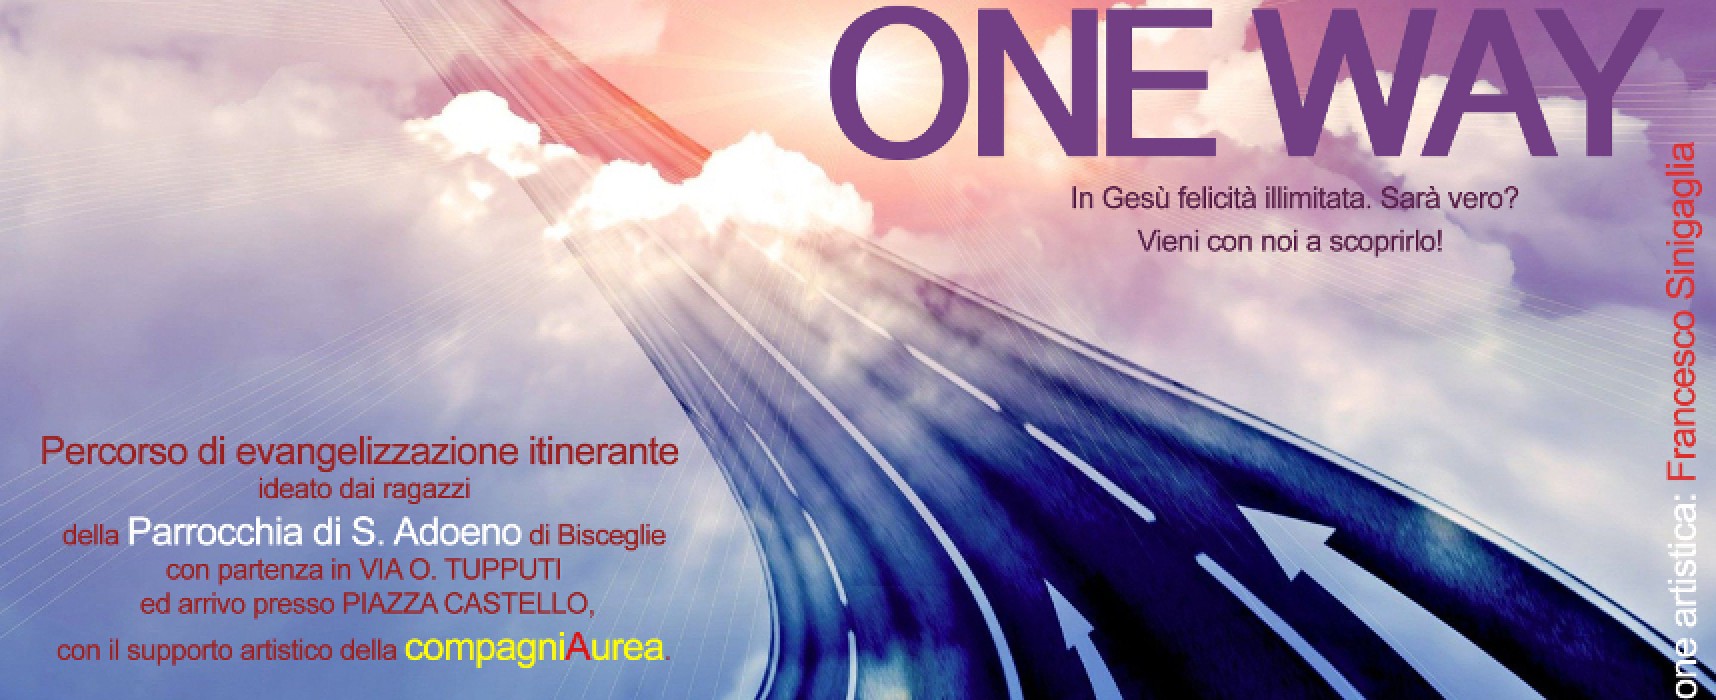 “One Way”, percorso di evangelizzazione itinerante a cura di Compagnia Aurea e parrocchia di sant’Adoeno